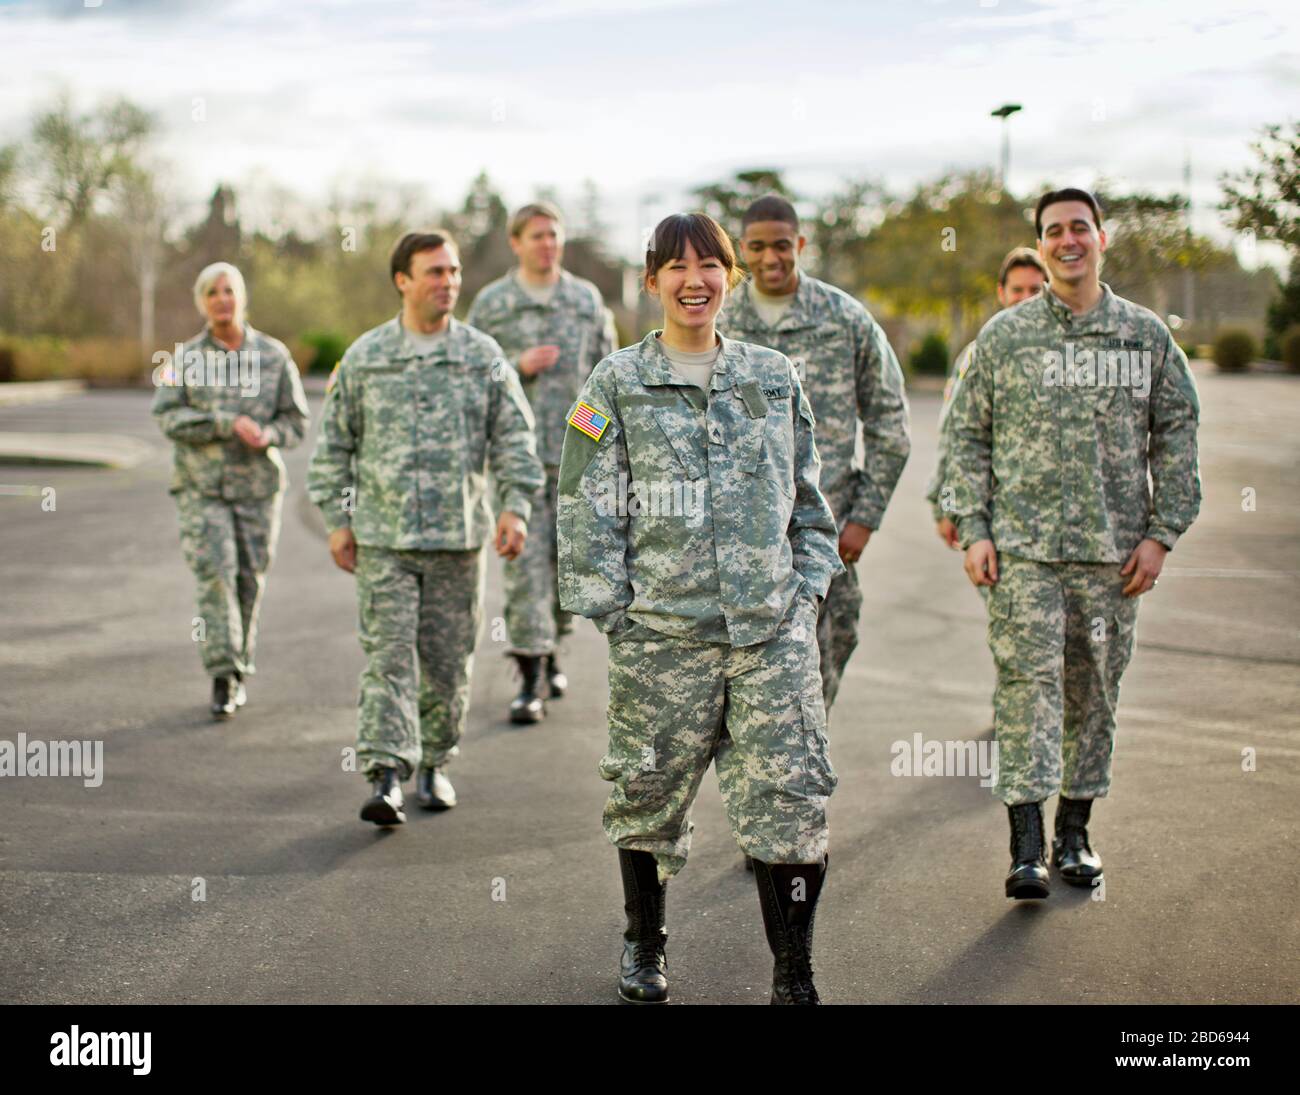 Eine Gruppe von Soldaten der US Army lächelt und lachen zusammen, während sie nach einer Trainingsübung über einen Parkplatz laufen. Stockfoto